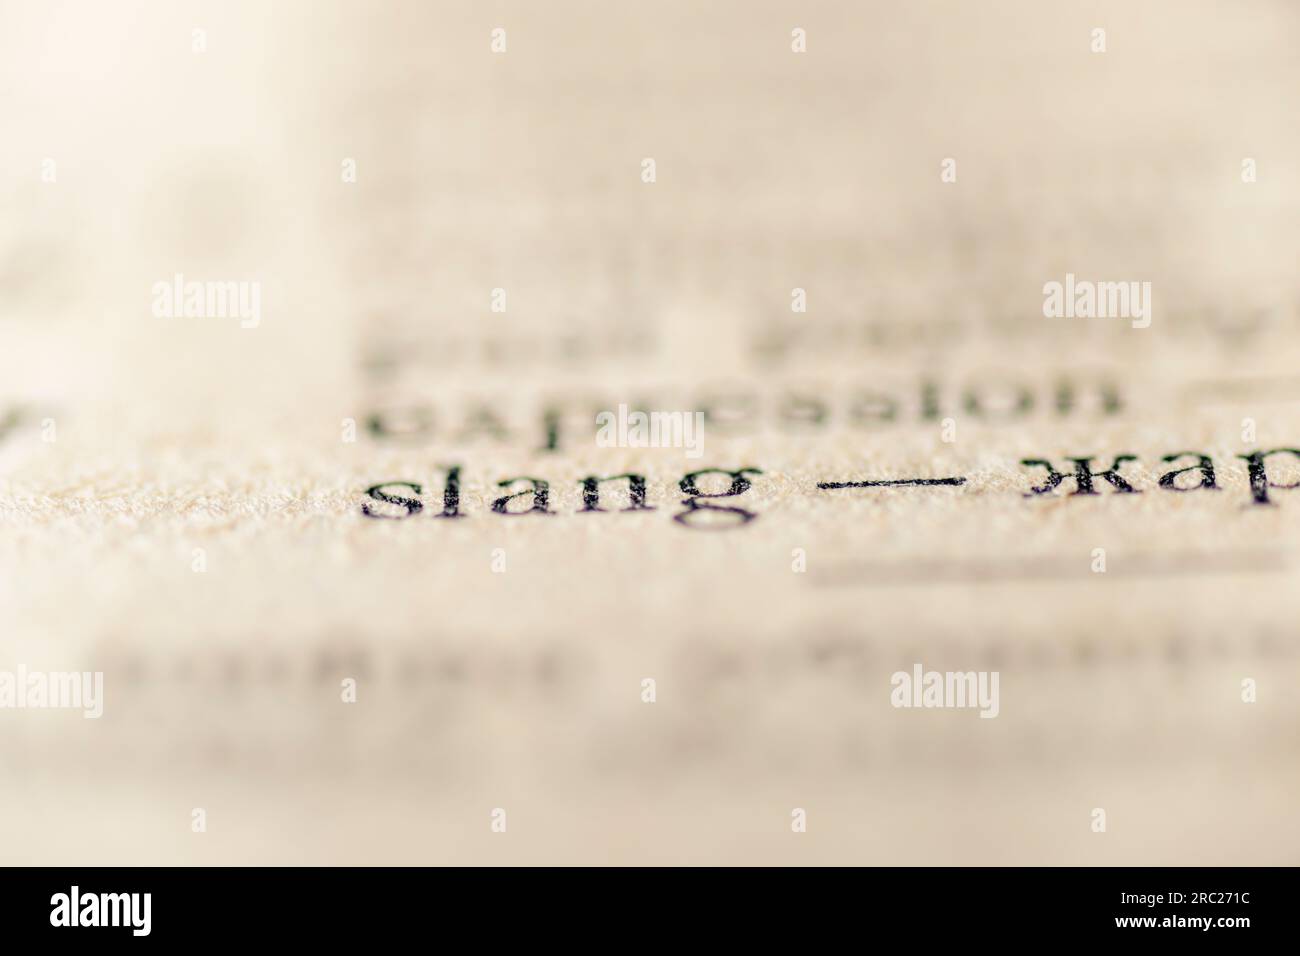 concentrez-vous sur le mot argot imprimé à l'intérieur du vocabulaire vintage Banque D'Images